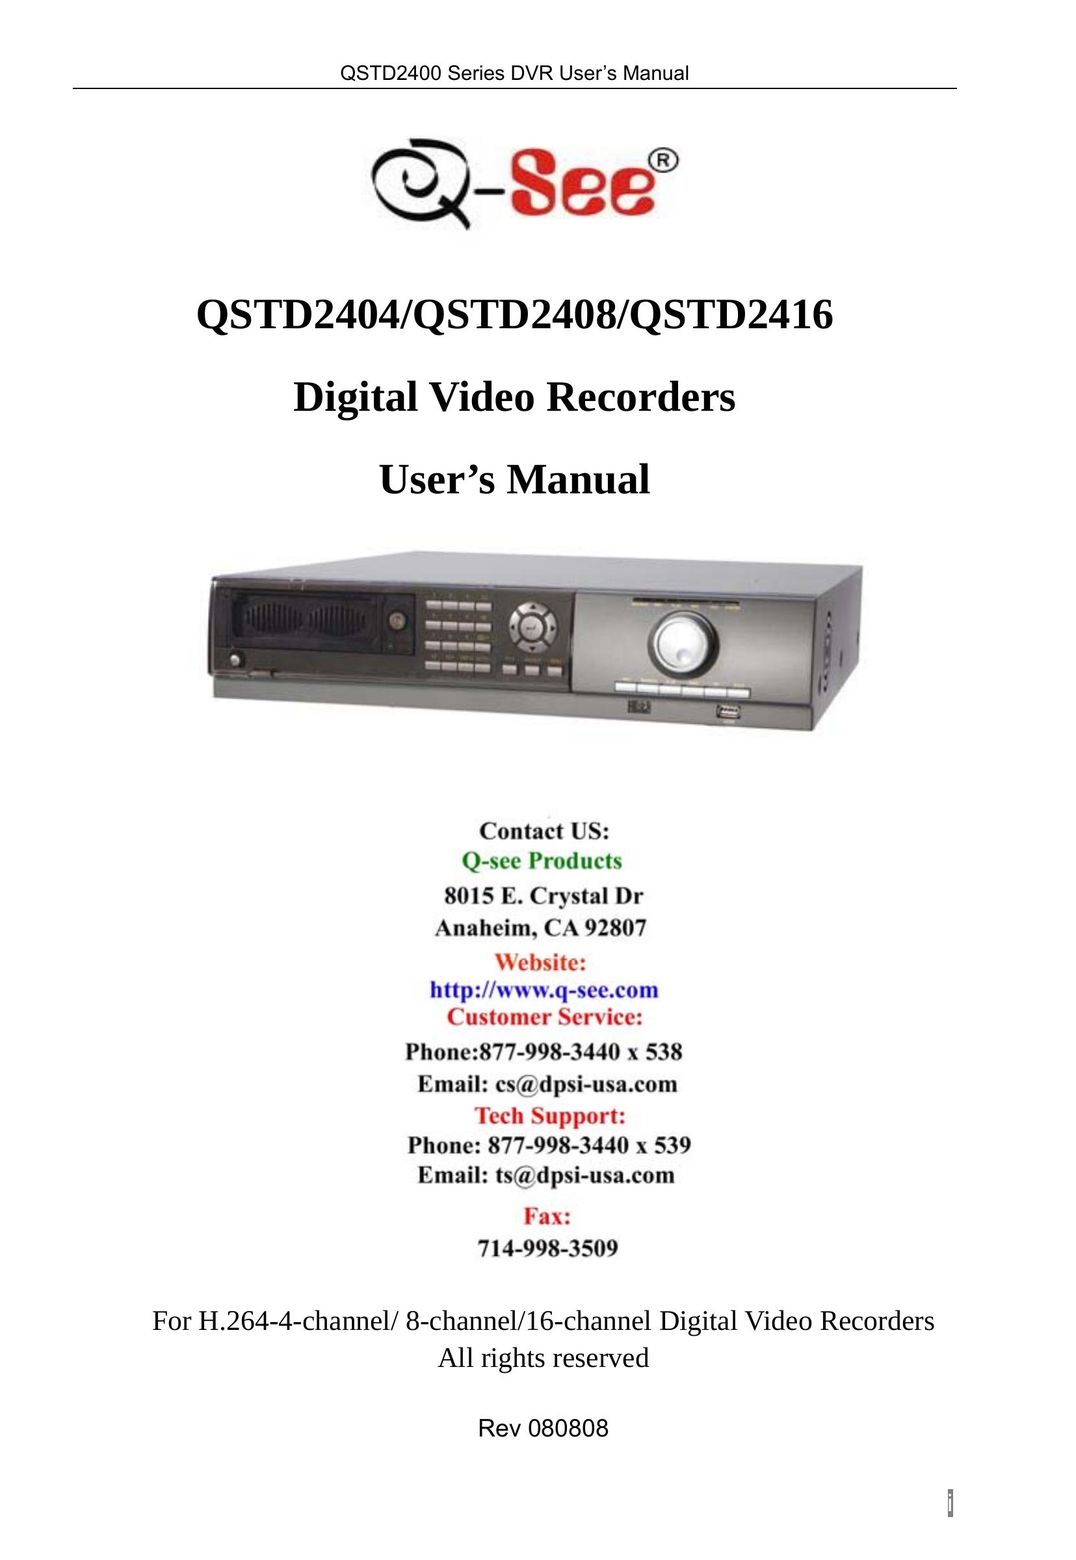 Q-See QSTD2408 Fan User Manual